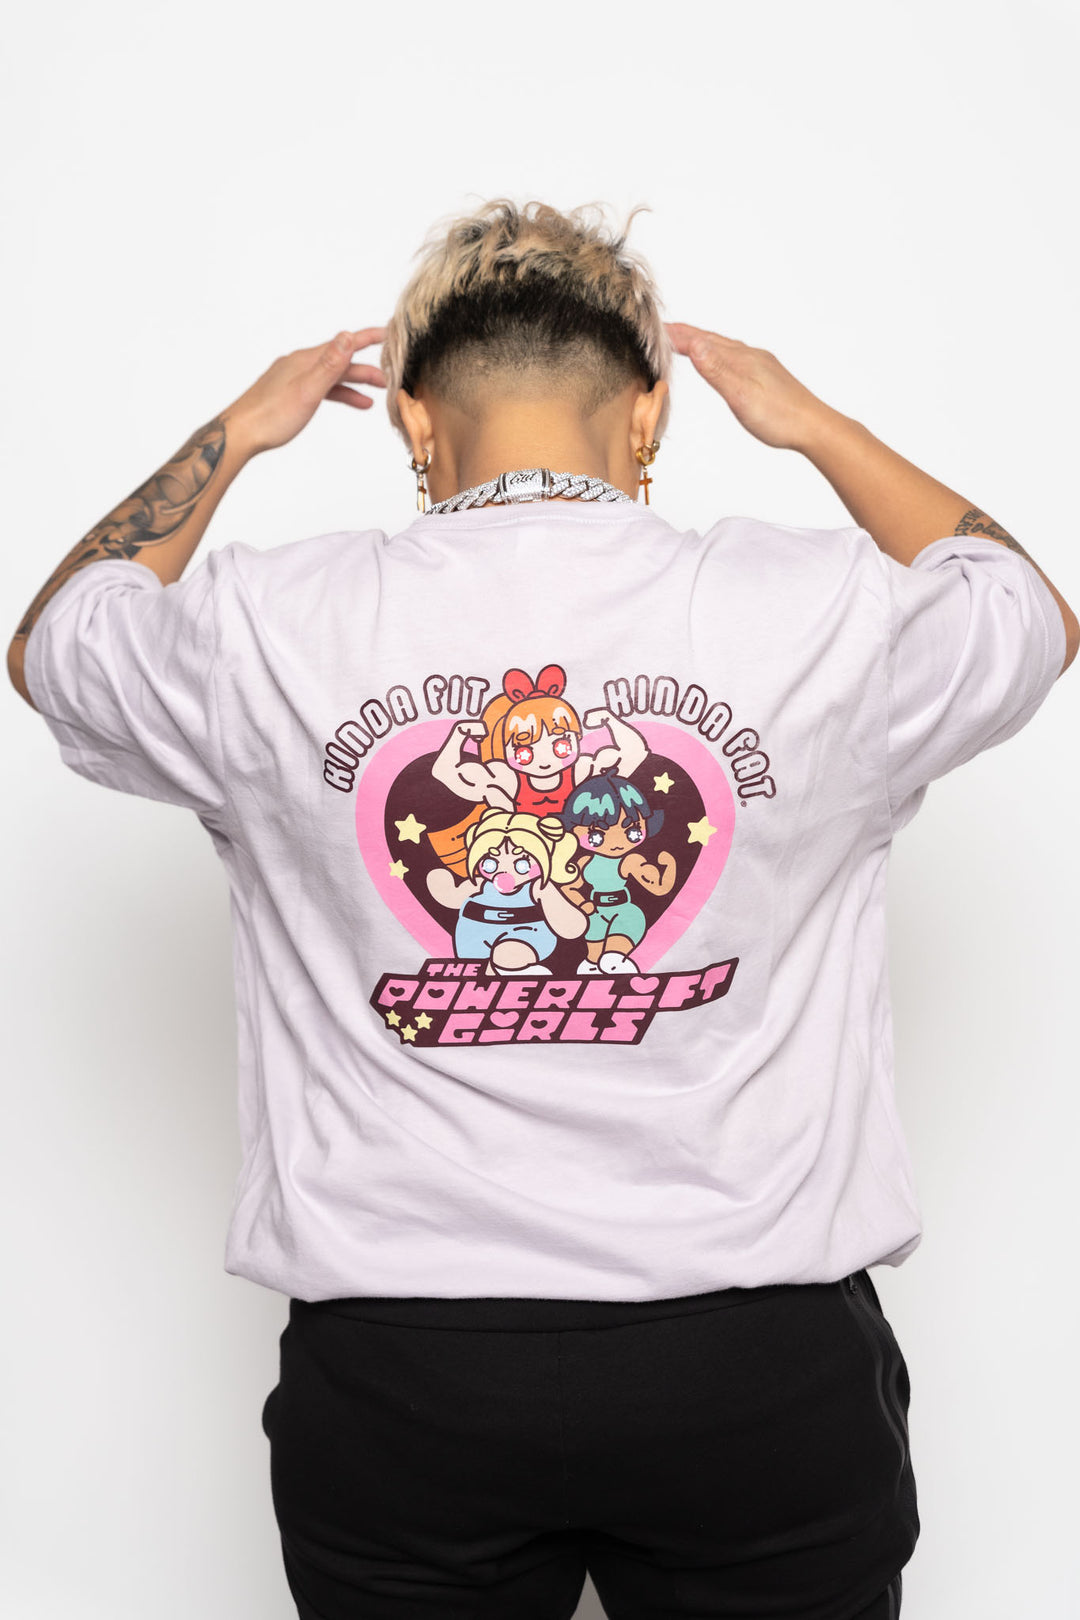 Powerlift Girls Unisex Shirt